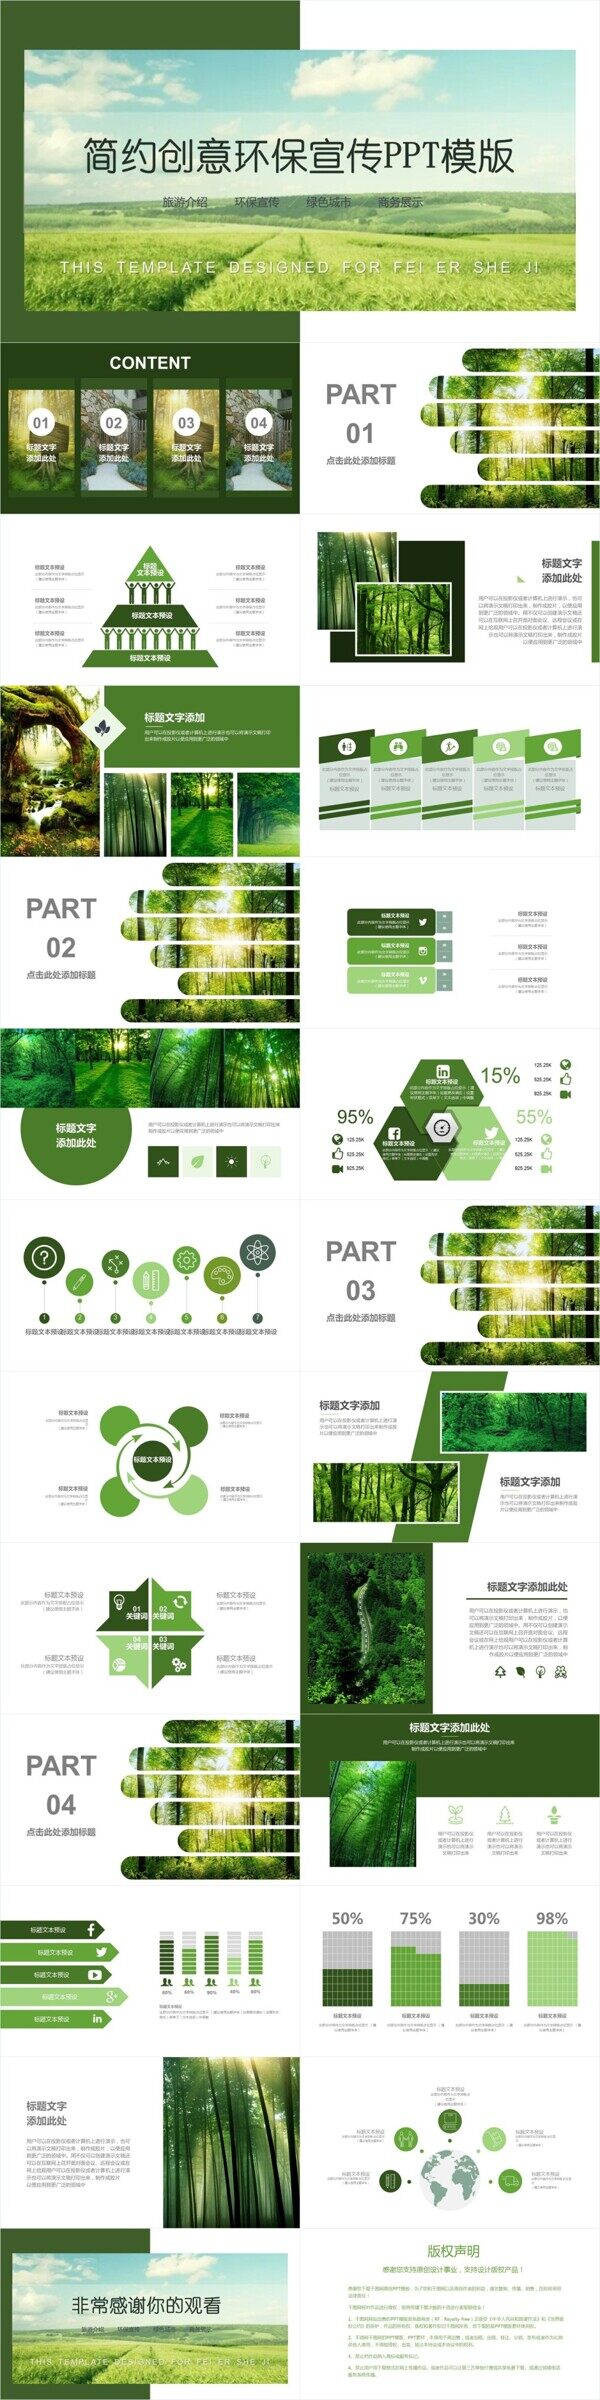 简约绿色环保公益宣传PPT模板